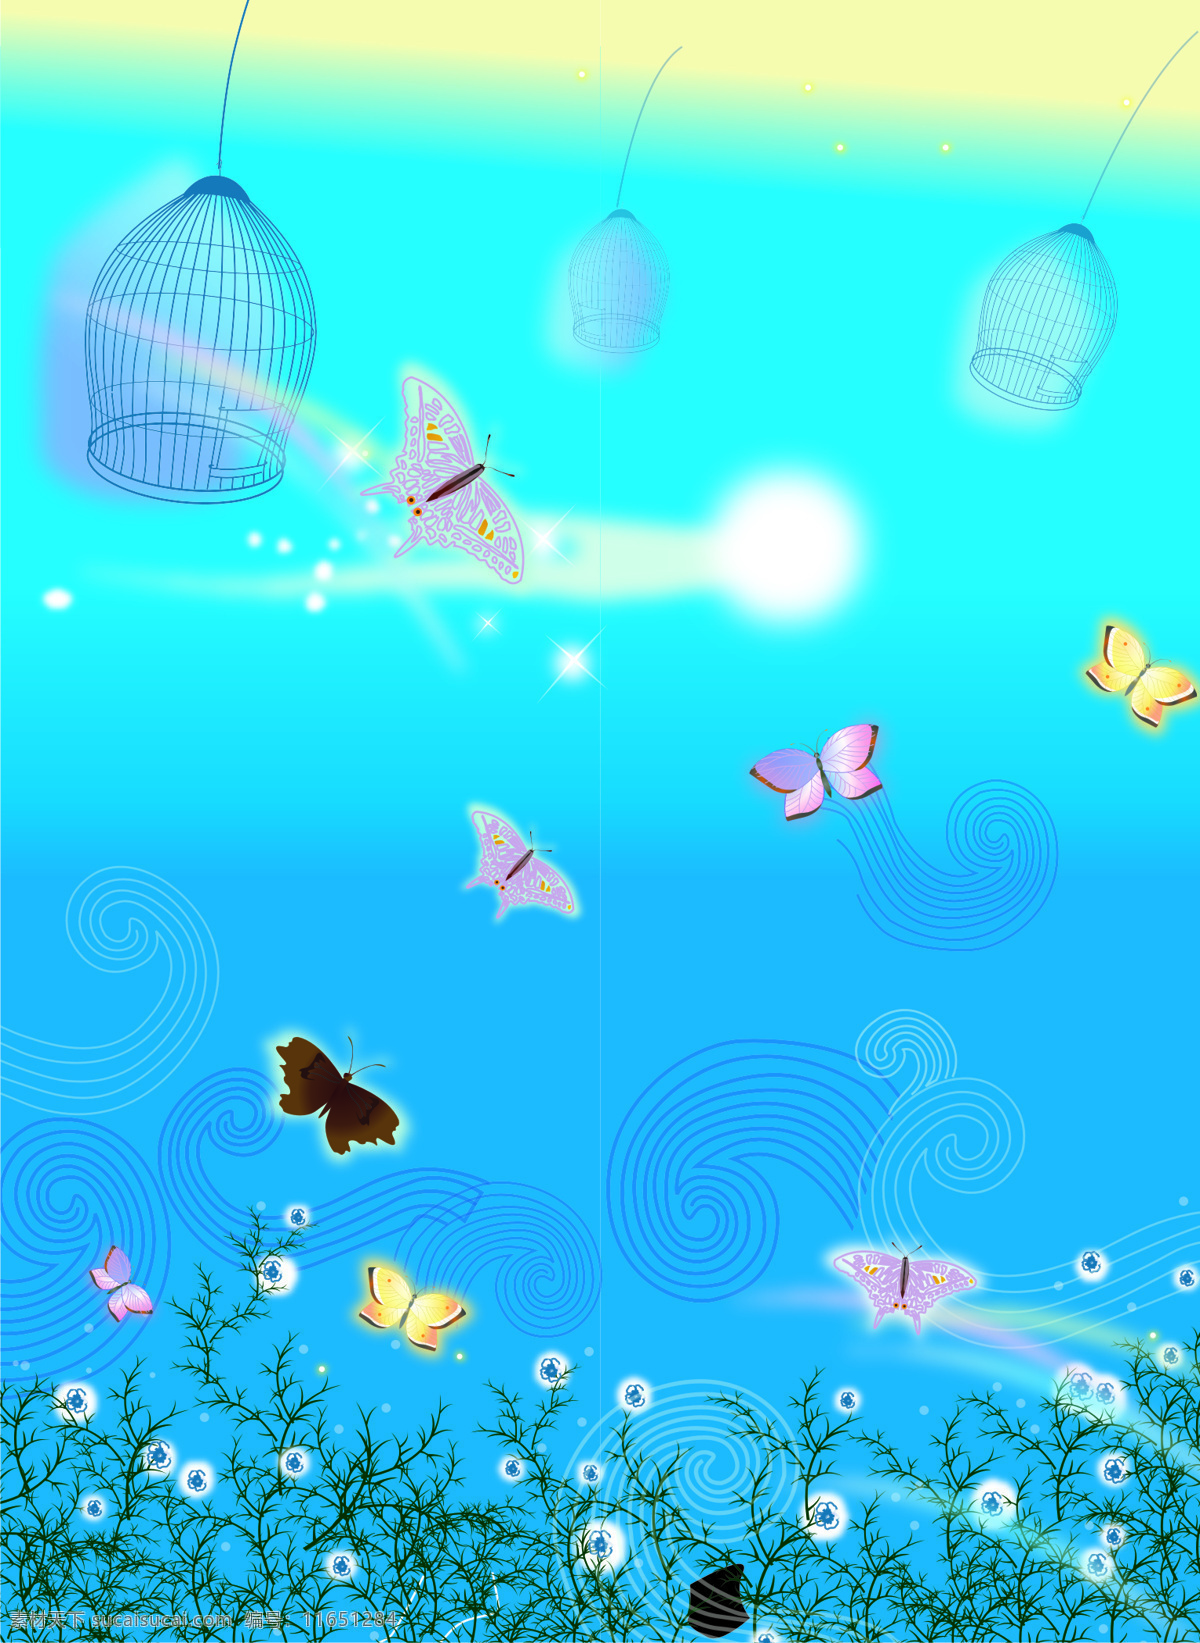 电脑 桌面 背景图片 动态 背景 海底世界 蝴蝶 鸟笼 设计图库 鱼 桌面背景图片